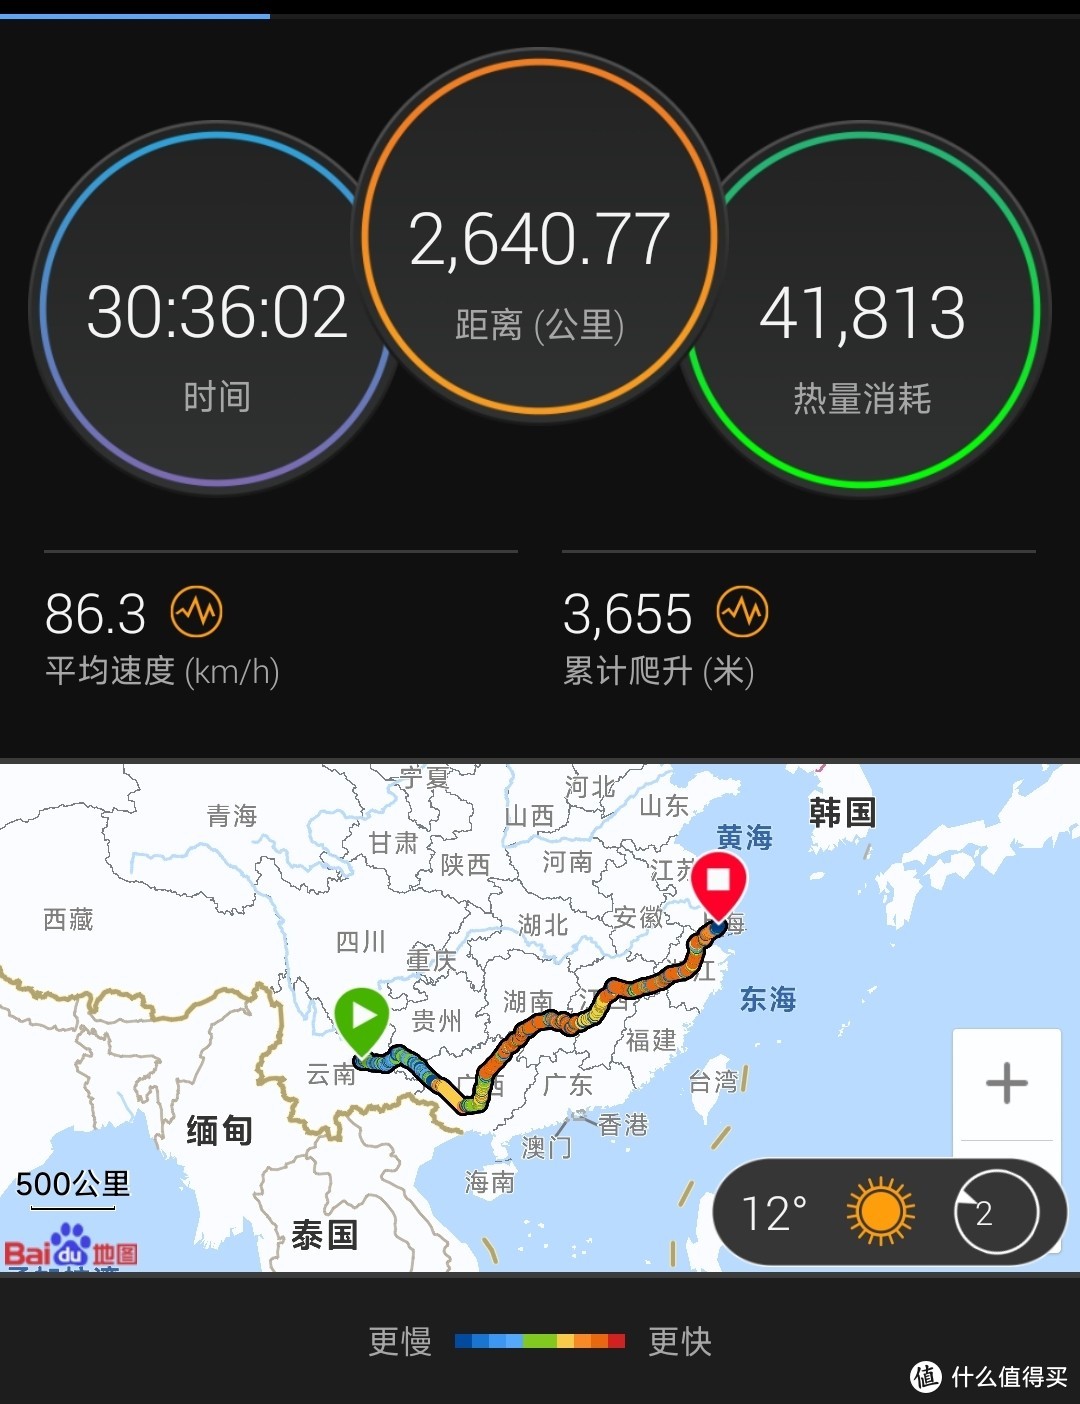 体验43小时的火车之旅--高铁+绿皮T382  丽江----上海